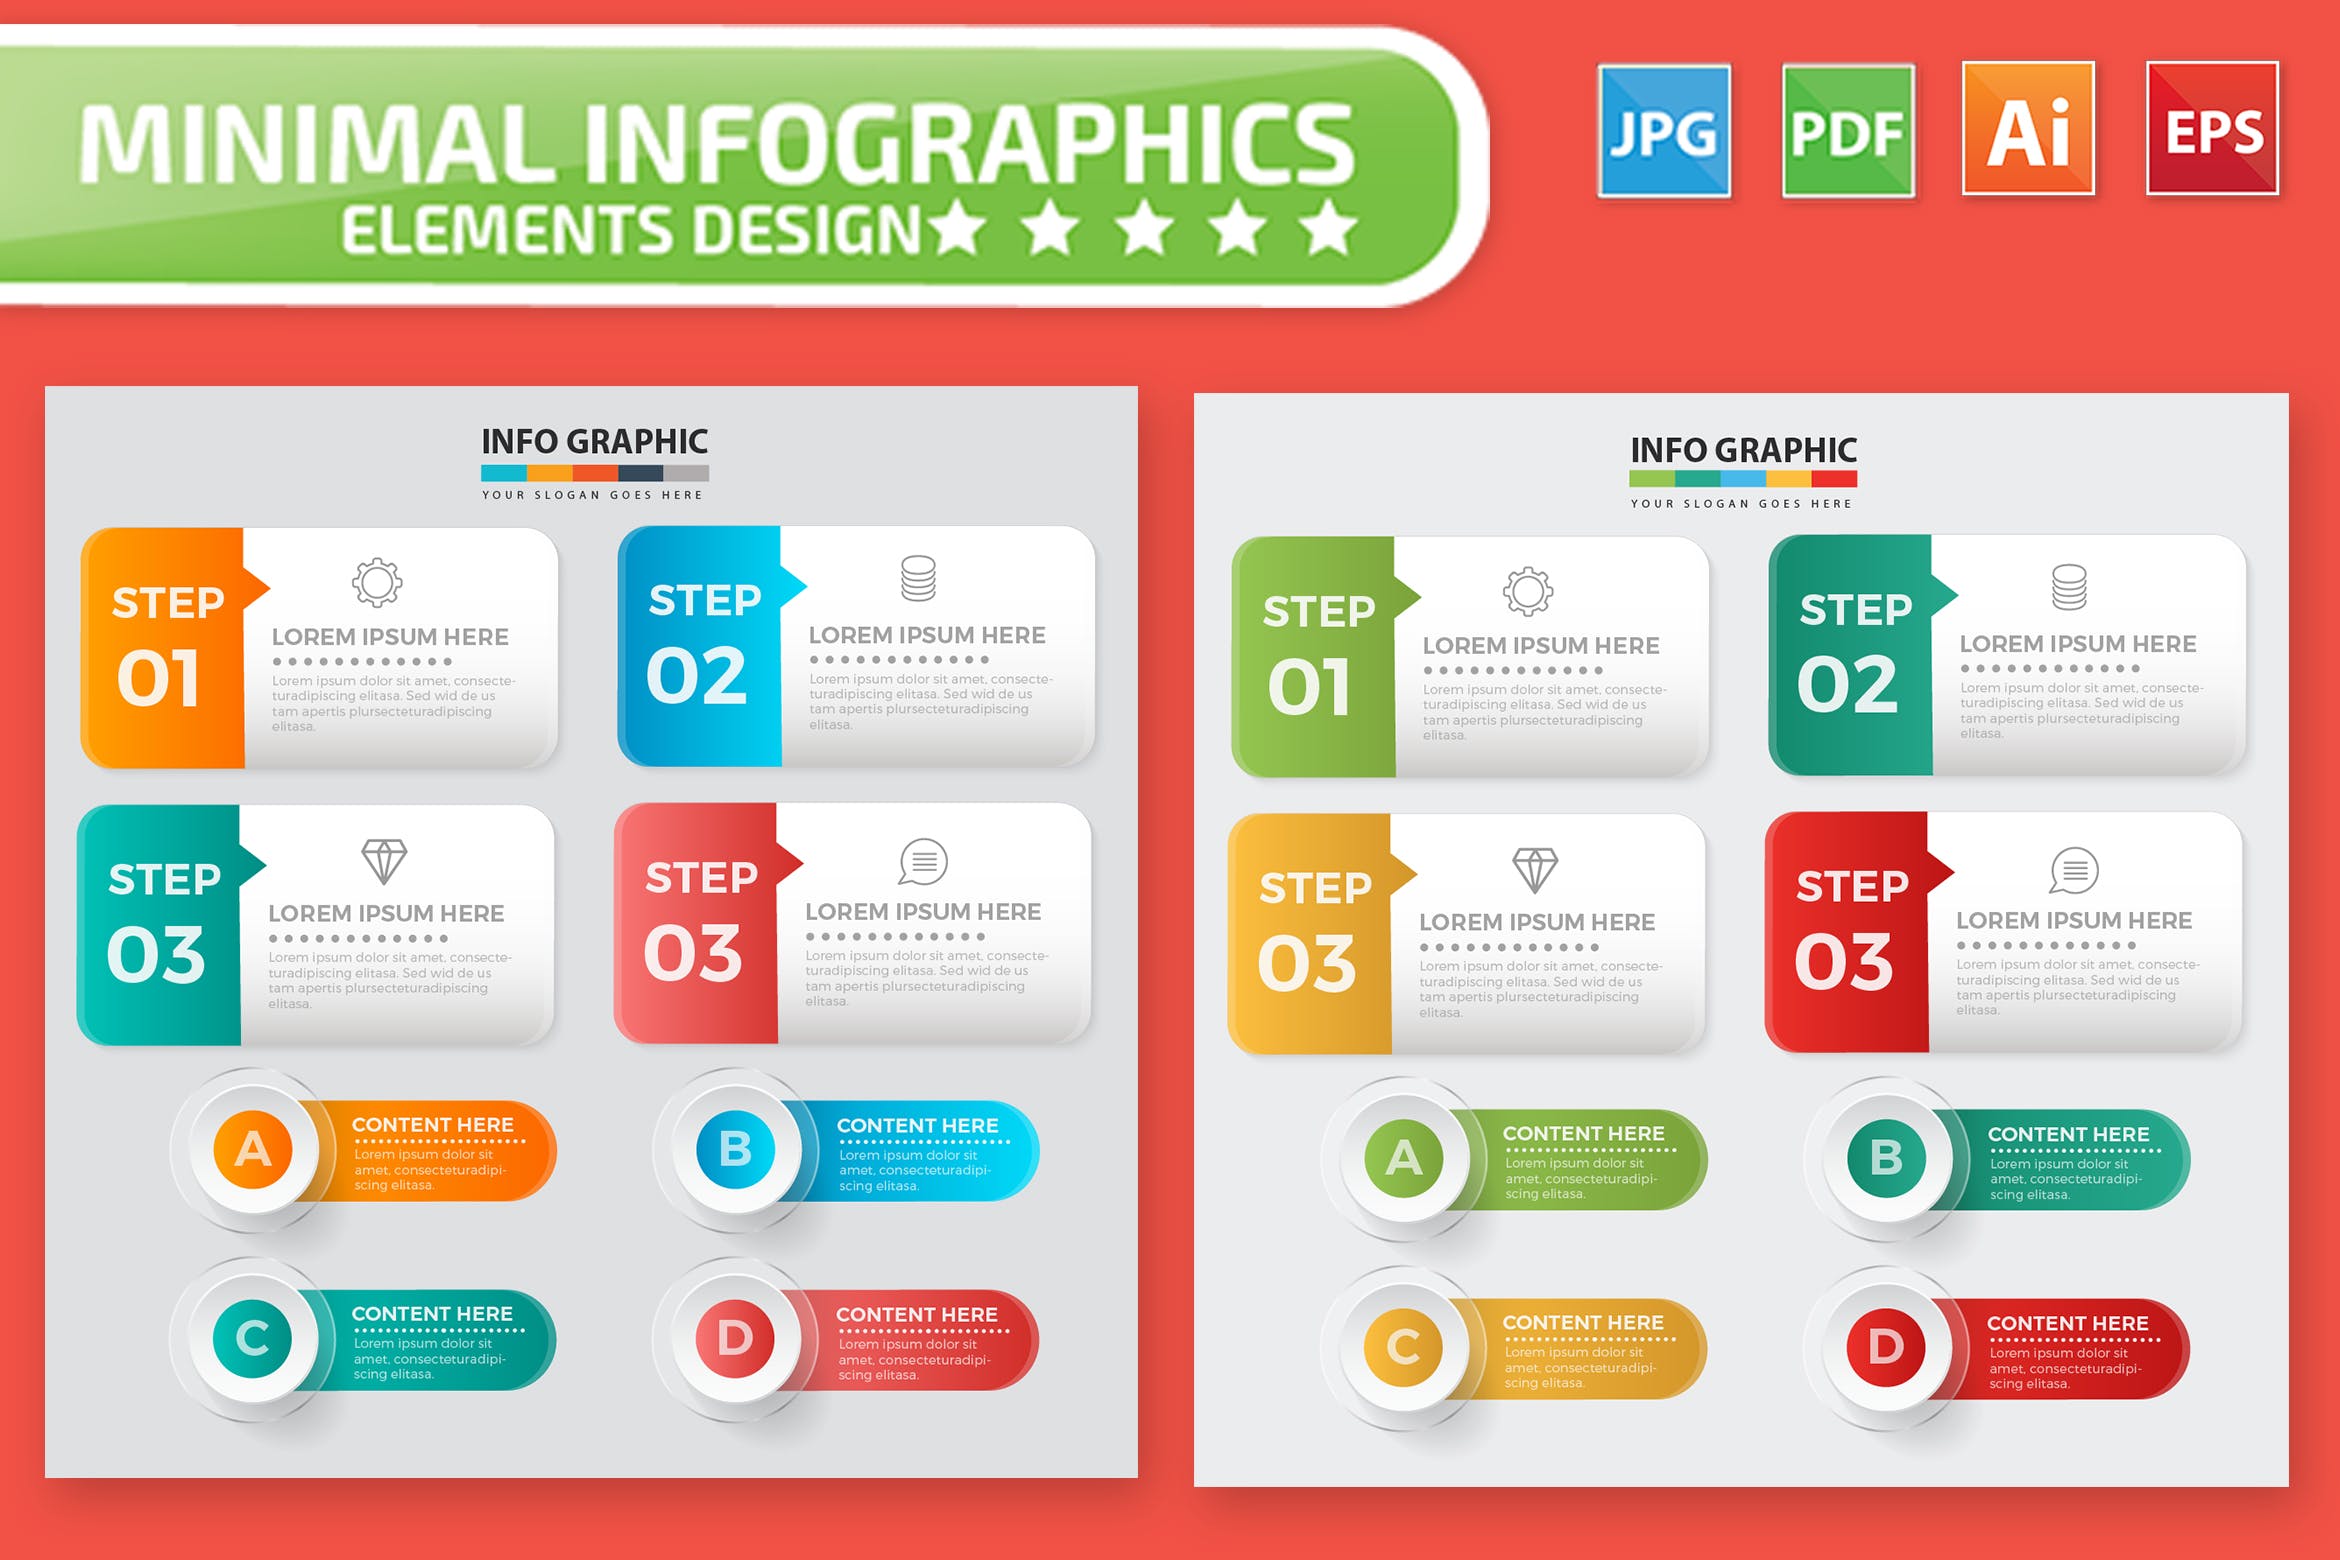 适用于设计流程步骤信息图表设计的素材包 Infographic Elements Design插图